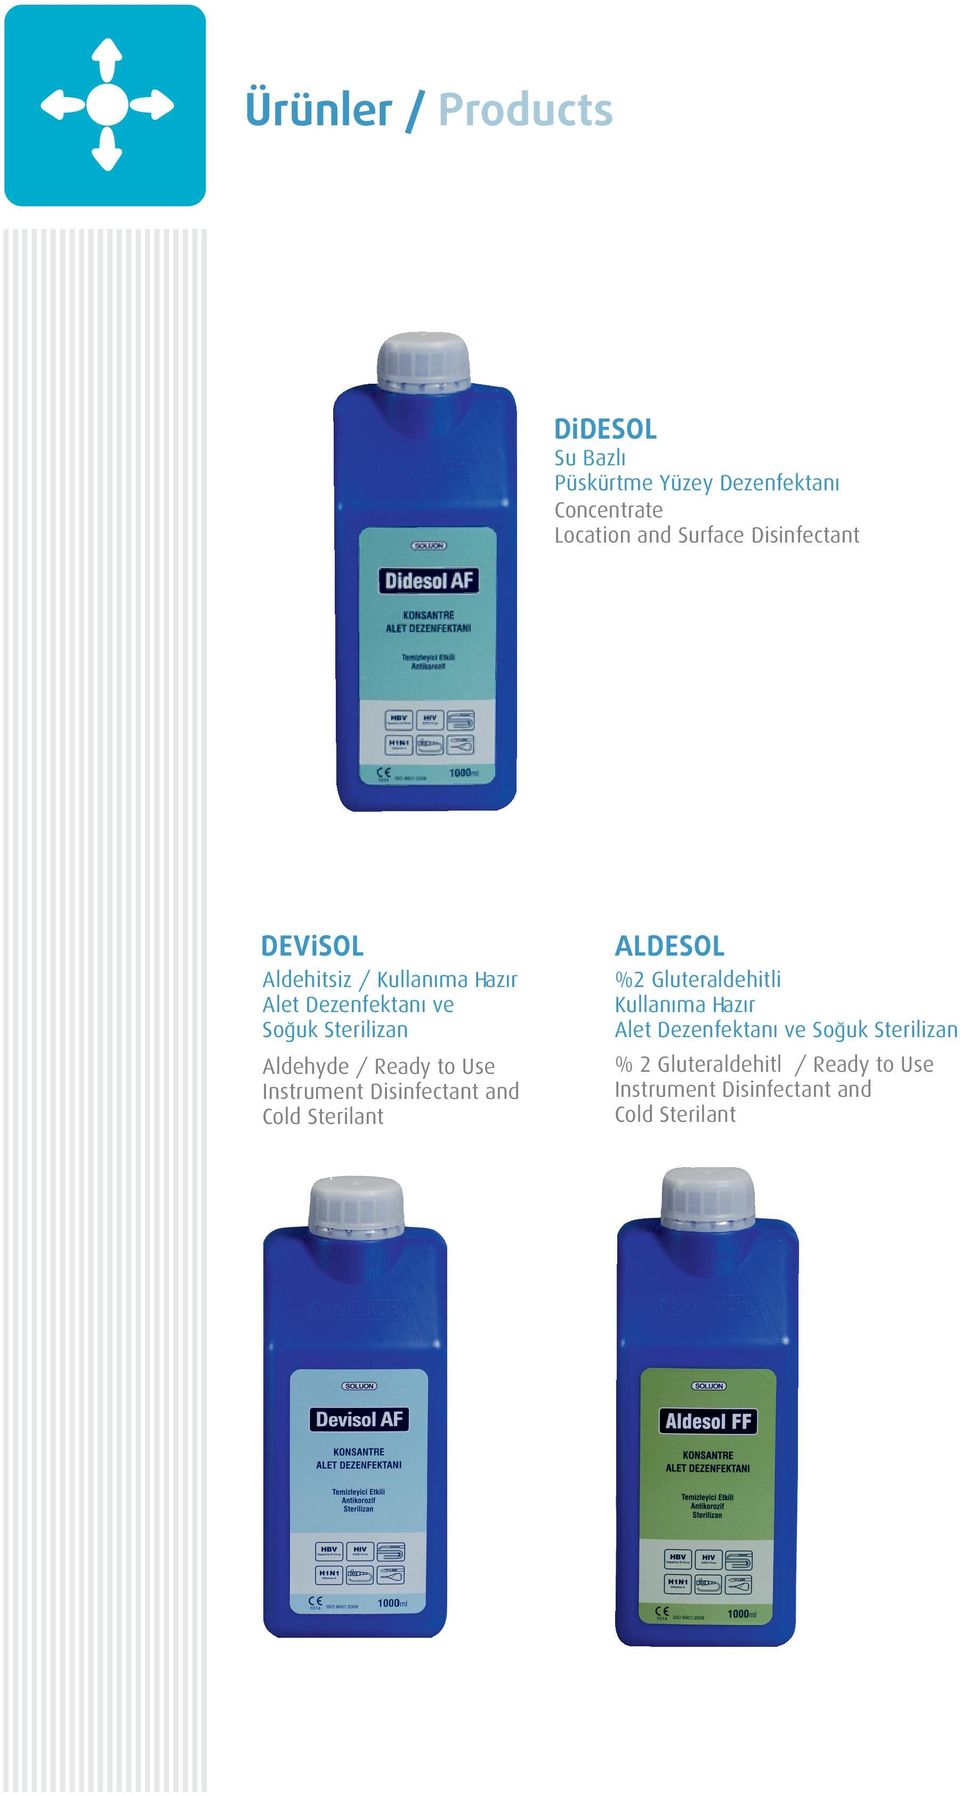 Gluteraldehitli Kullanıma Hazır Alet Dezenfektanı ve Soğuk Sterilizan Aldehyde / Ready to Use